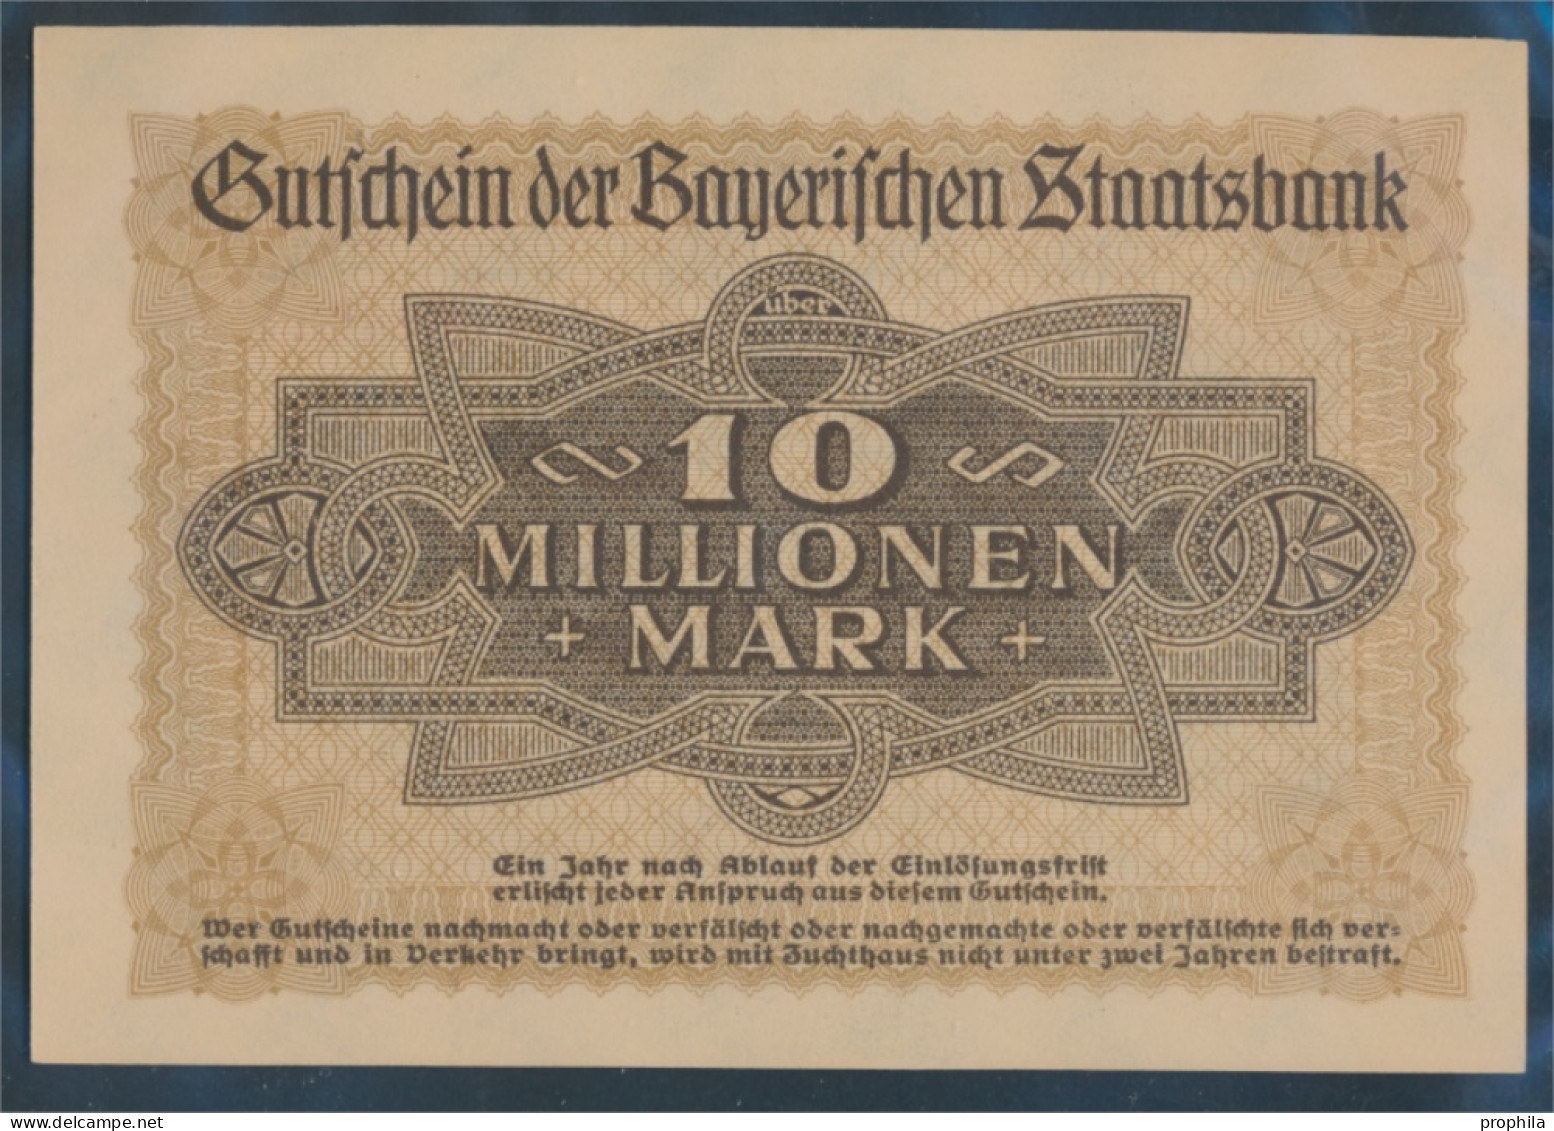 Bayern Inflationsgeld Bayerische Staatsbank Bankfrisch 1923 10 Millionen Mark (10288396 - 10 Mio. Mark